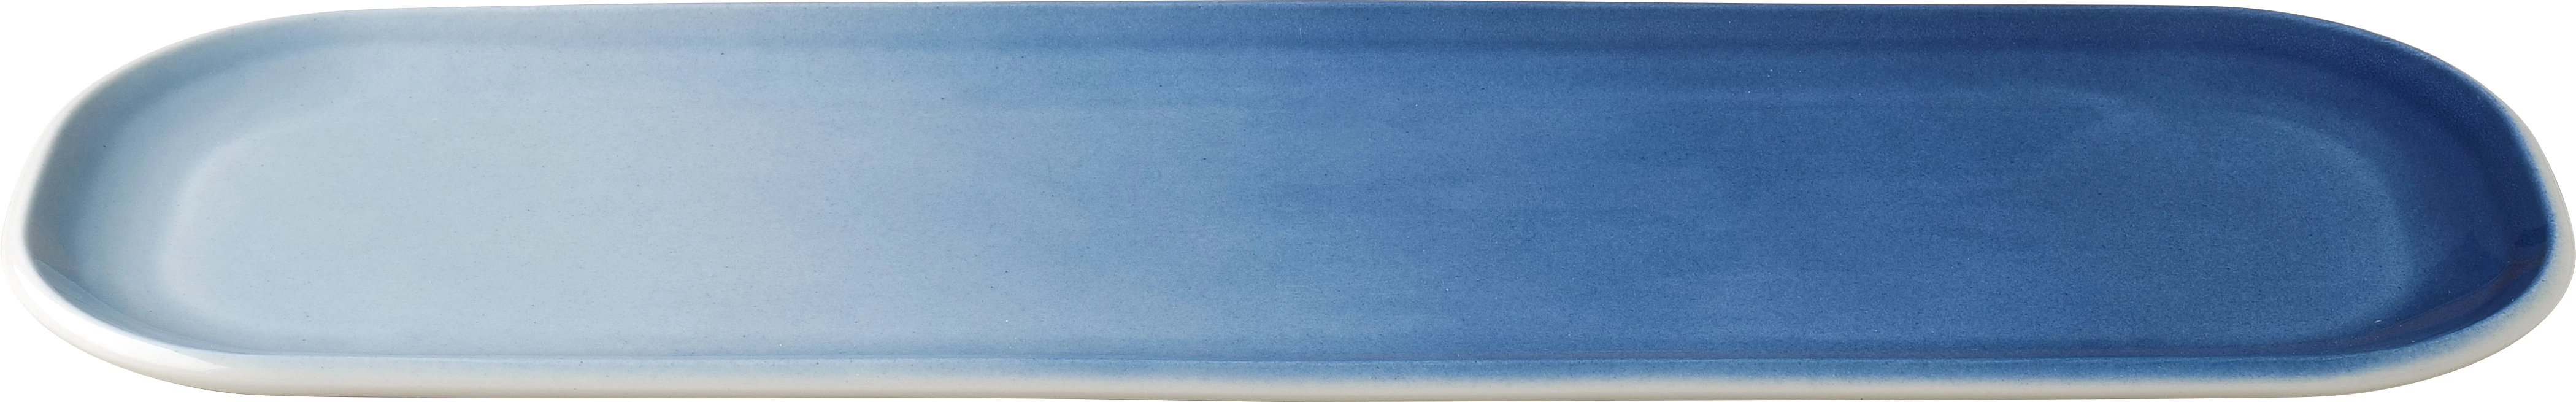 Figgjo Pax fad, oval, blå, 41 x 13 cm